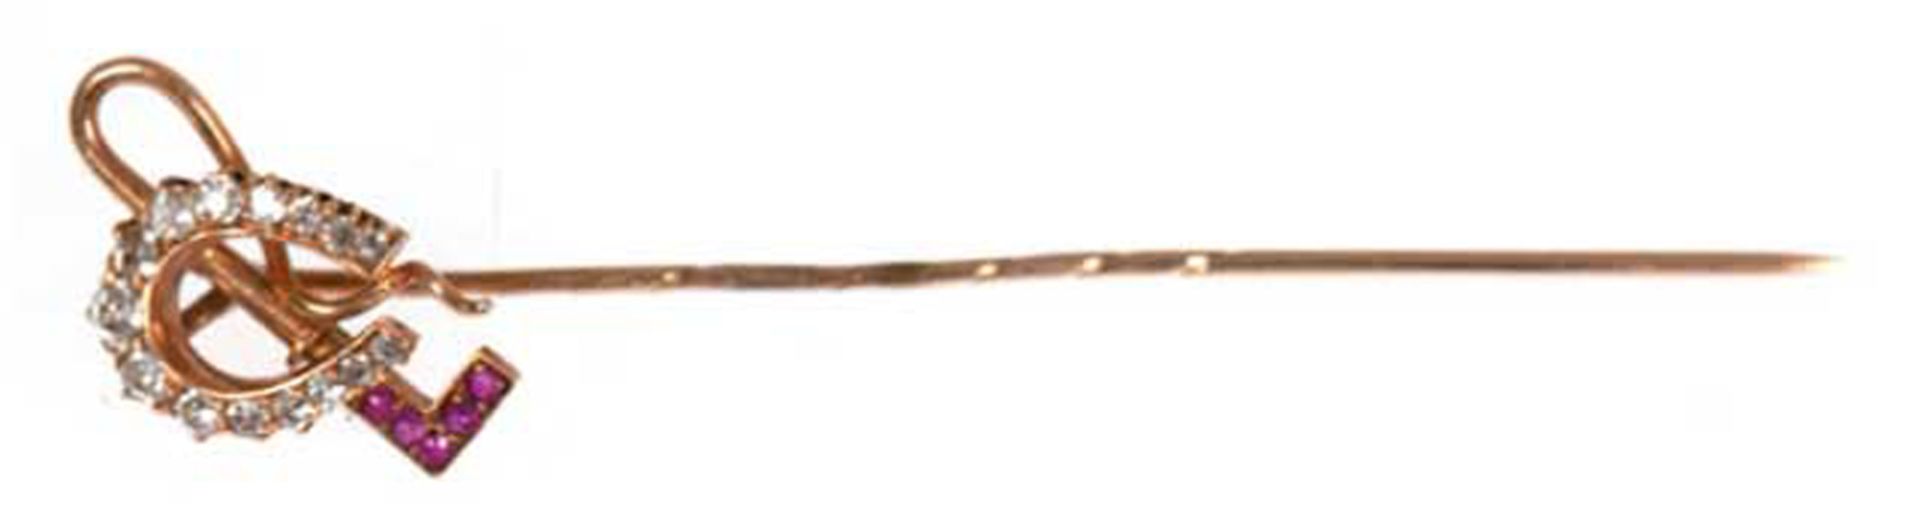 Krawattennadel in Form eines Hufeisens und Reitgerte, 585er GG, punziert, besetzt mit 5 kl. Rubinen